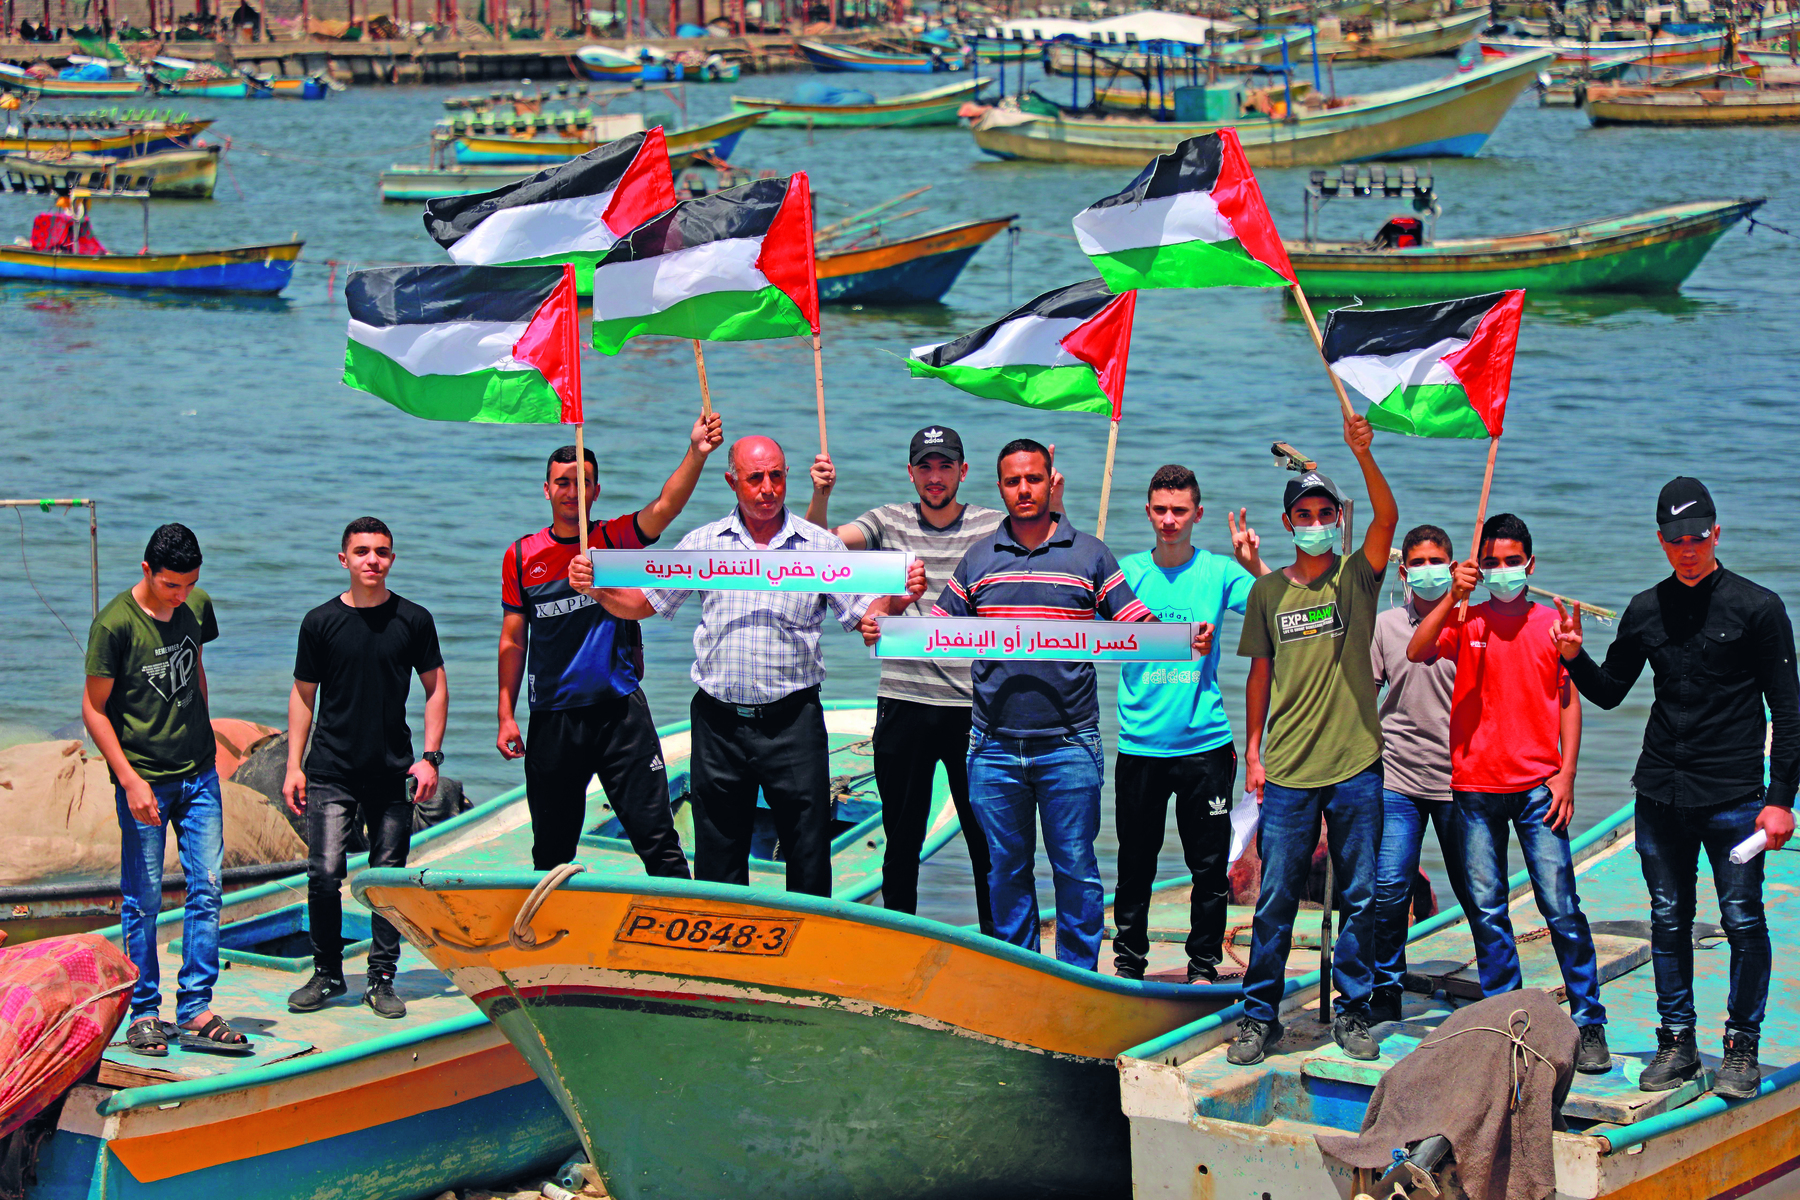 Fotografia. Um grupo de homens, vistos de frente, lado a lado, sobre algumas pequenas embarcações, portando bandeiras da Palestina. A bandeira da Palestina é retangular, possui um triângulo vermelho à direita e três faixas, uma preta, uma branca e uma verde, de cima para baixo. 